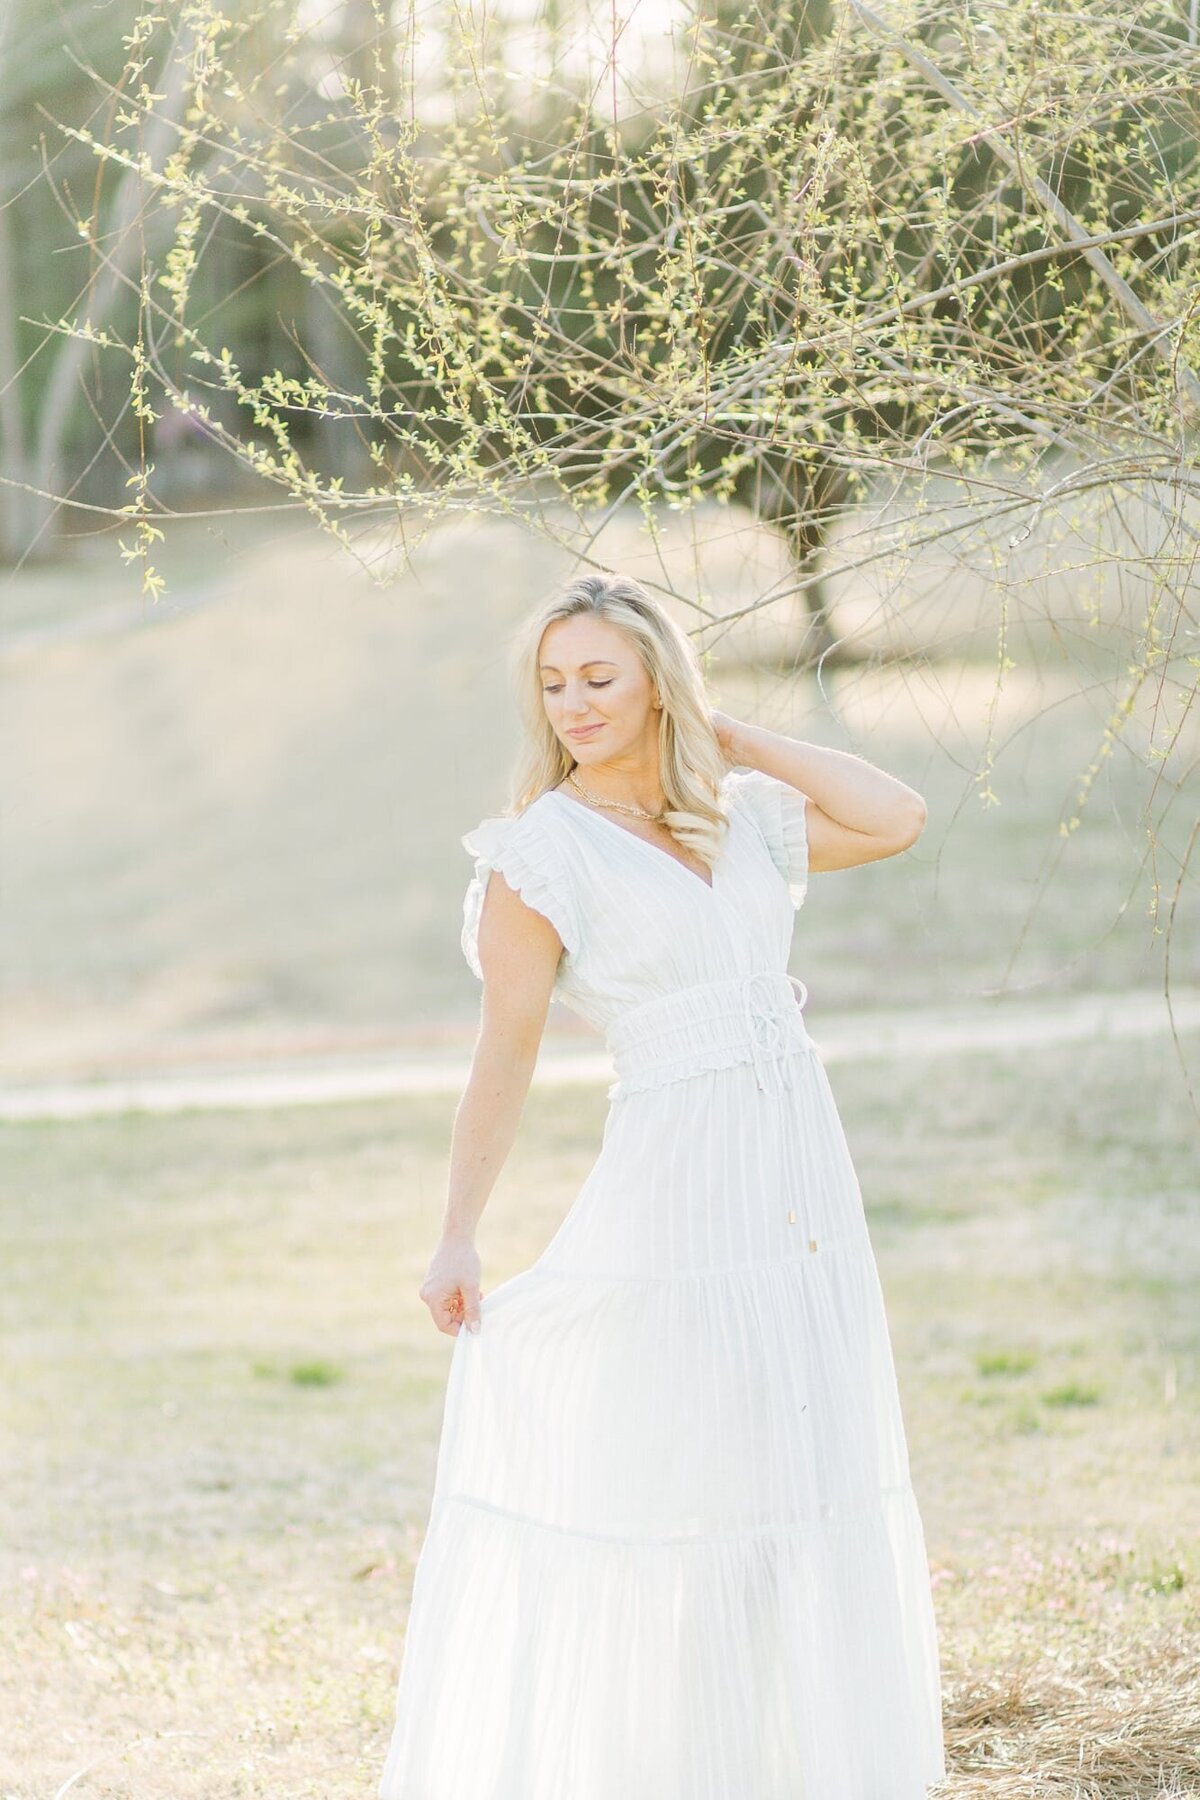 Woman posing in a white dress in a field